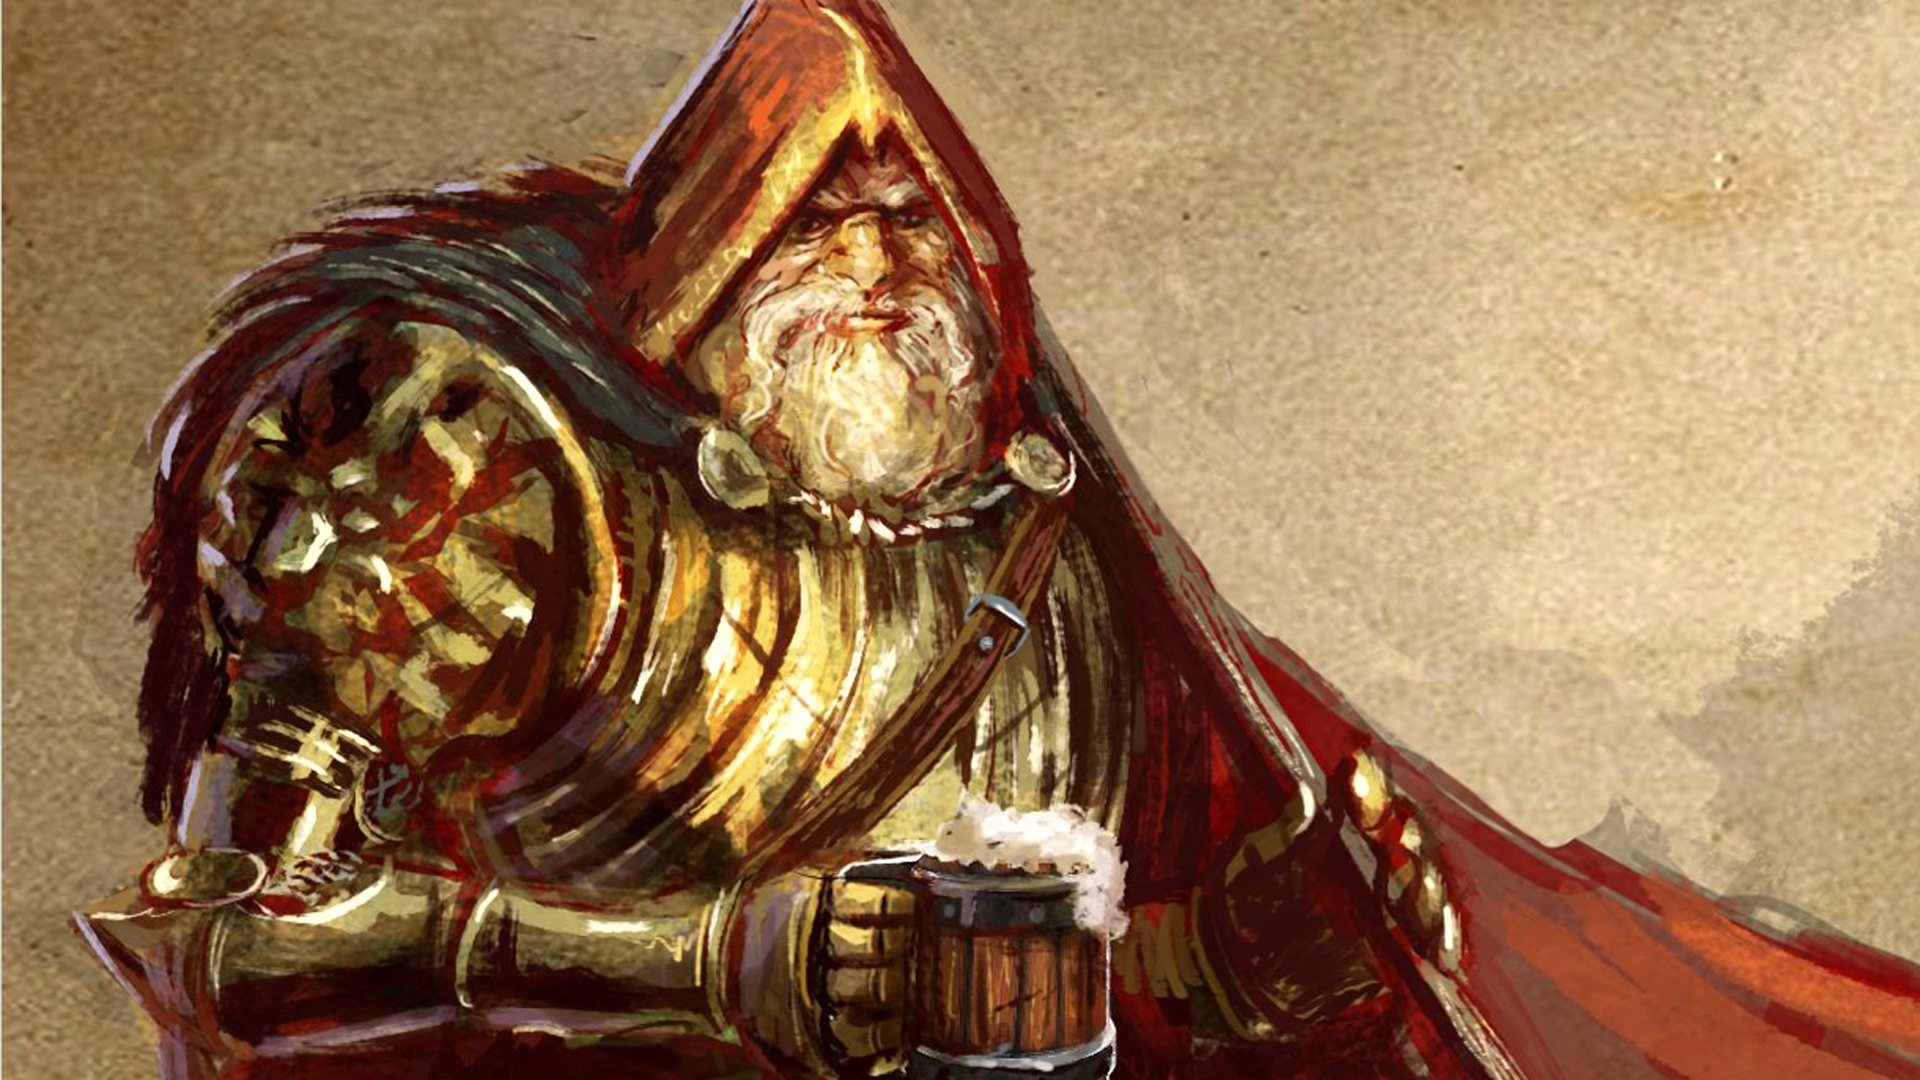 Elder Scrolls devs' RPG The Wayward Realms is seeking funding